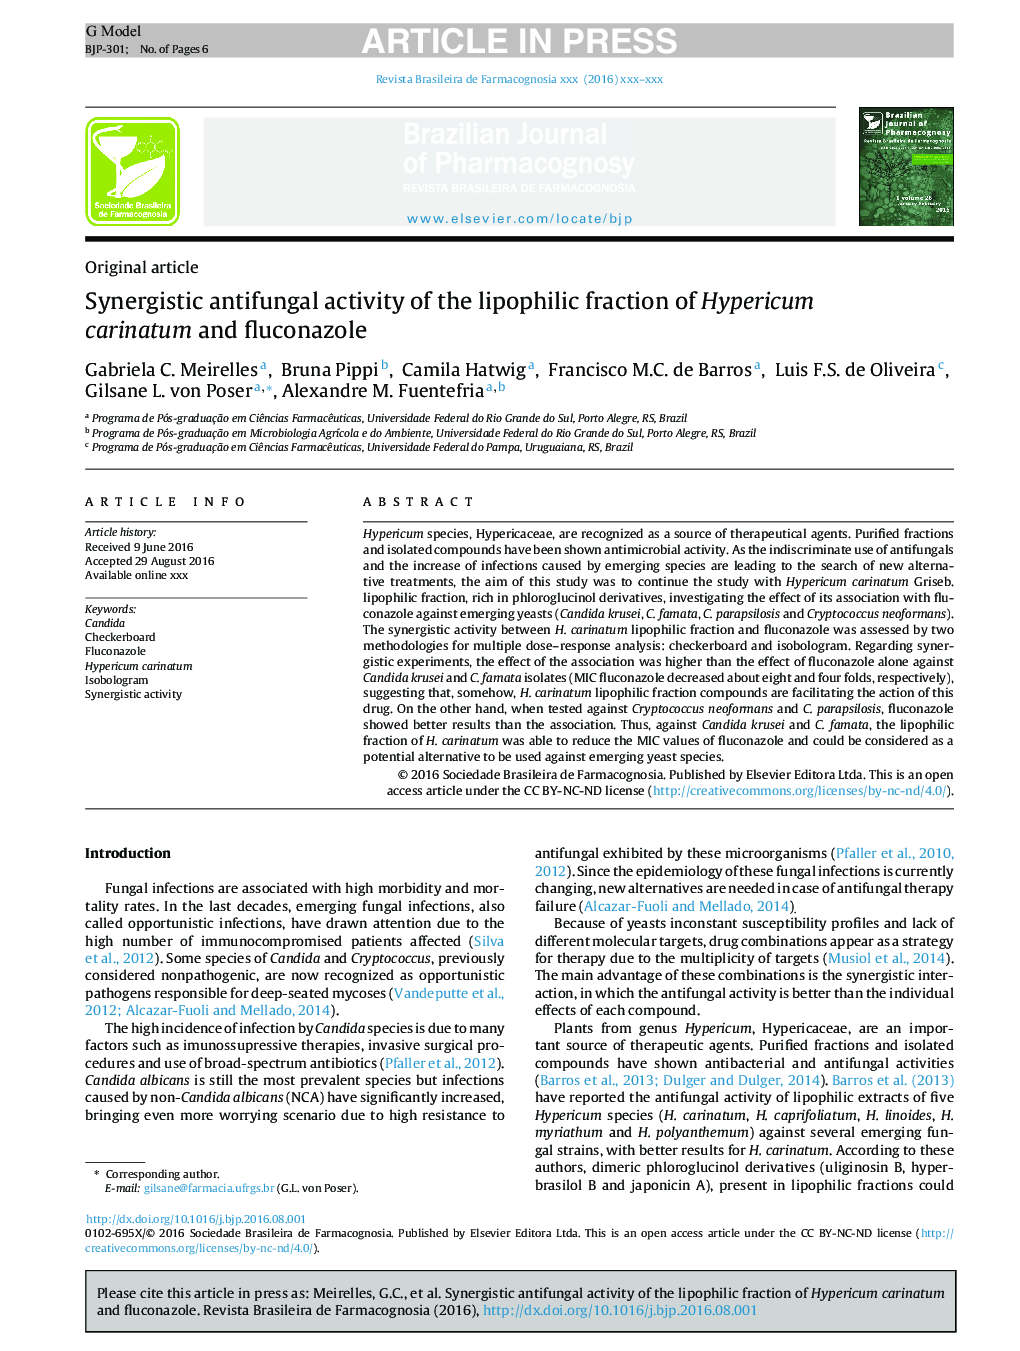 Synergistic antifungal activity of the lipophilic fraction of Hypericum carinatum and fluconazole